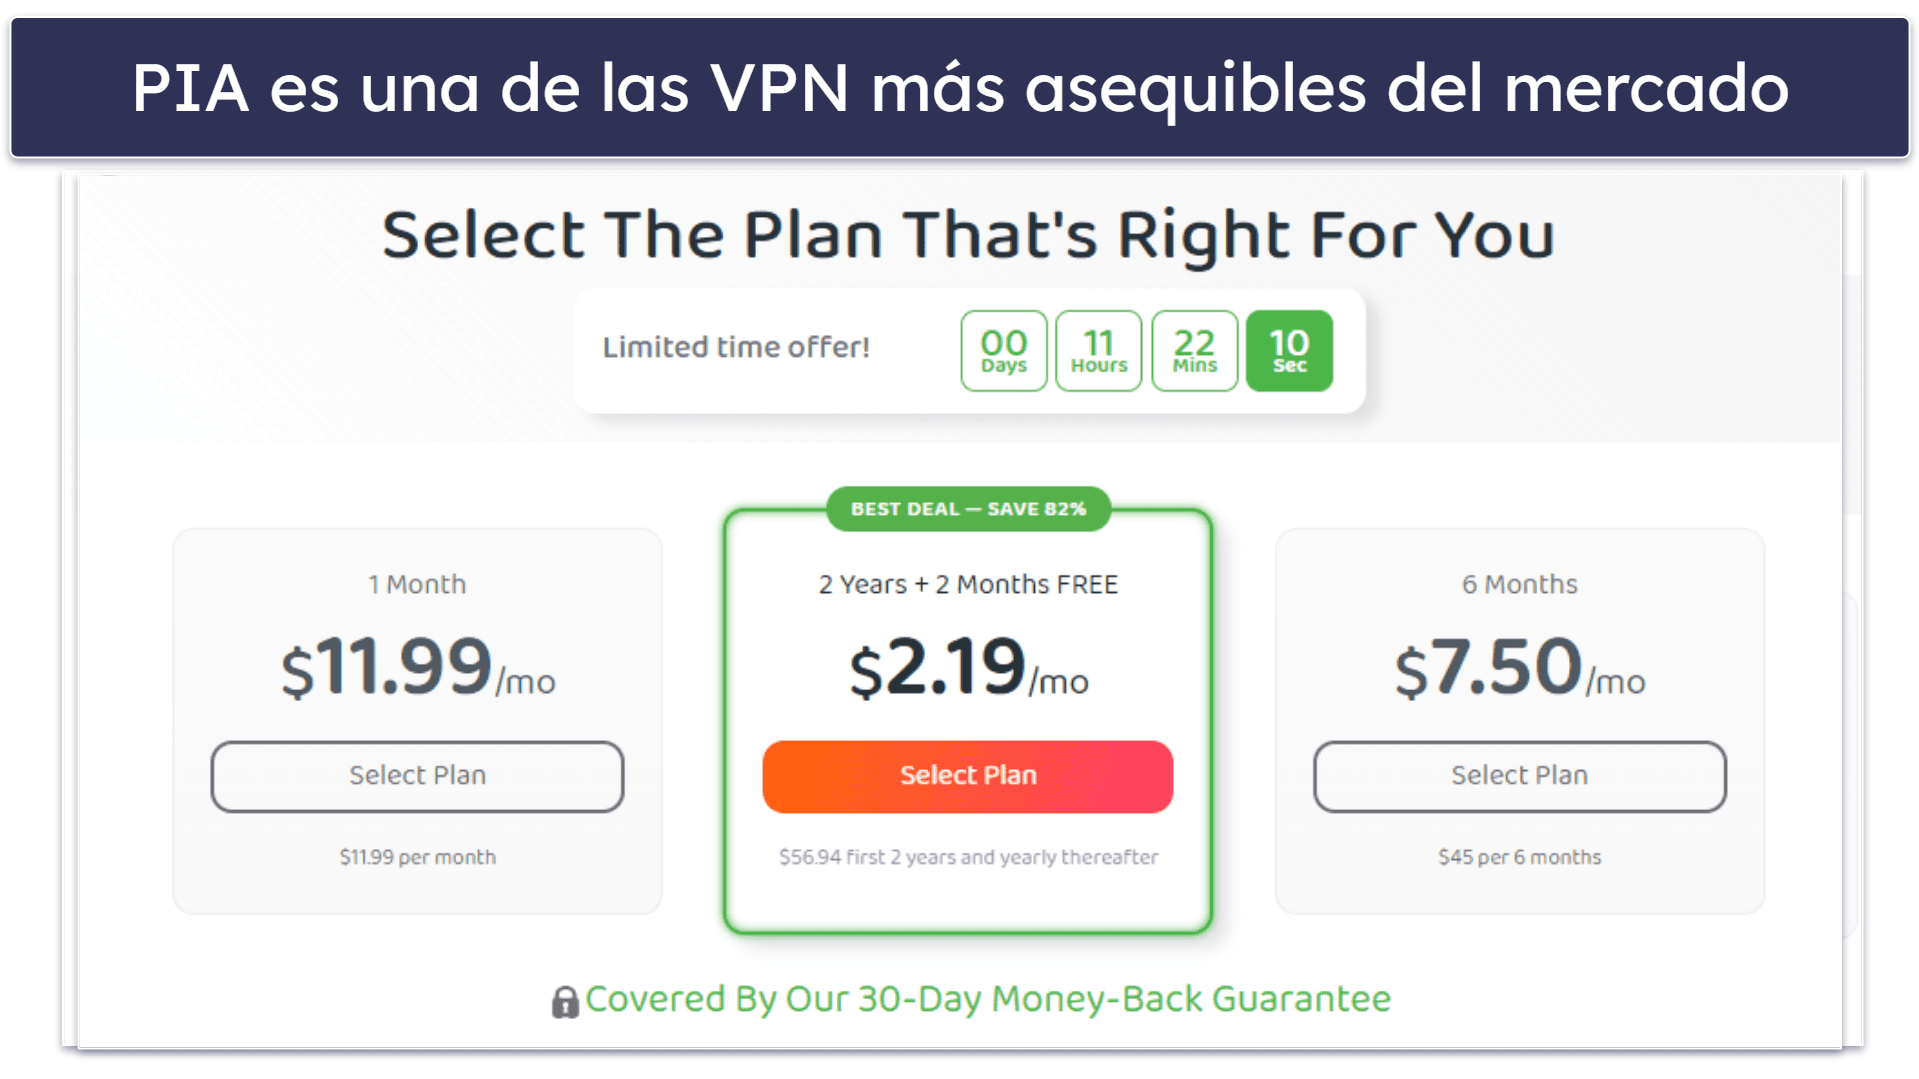 🥈2. Private Internet Access (PIA): Tiene un plan de pago por mes estupendo para navegar y descargar torrents